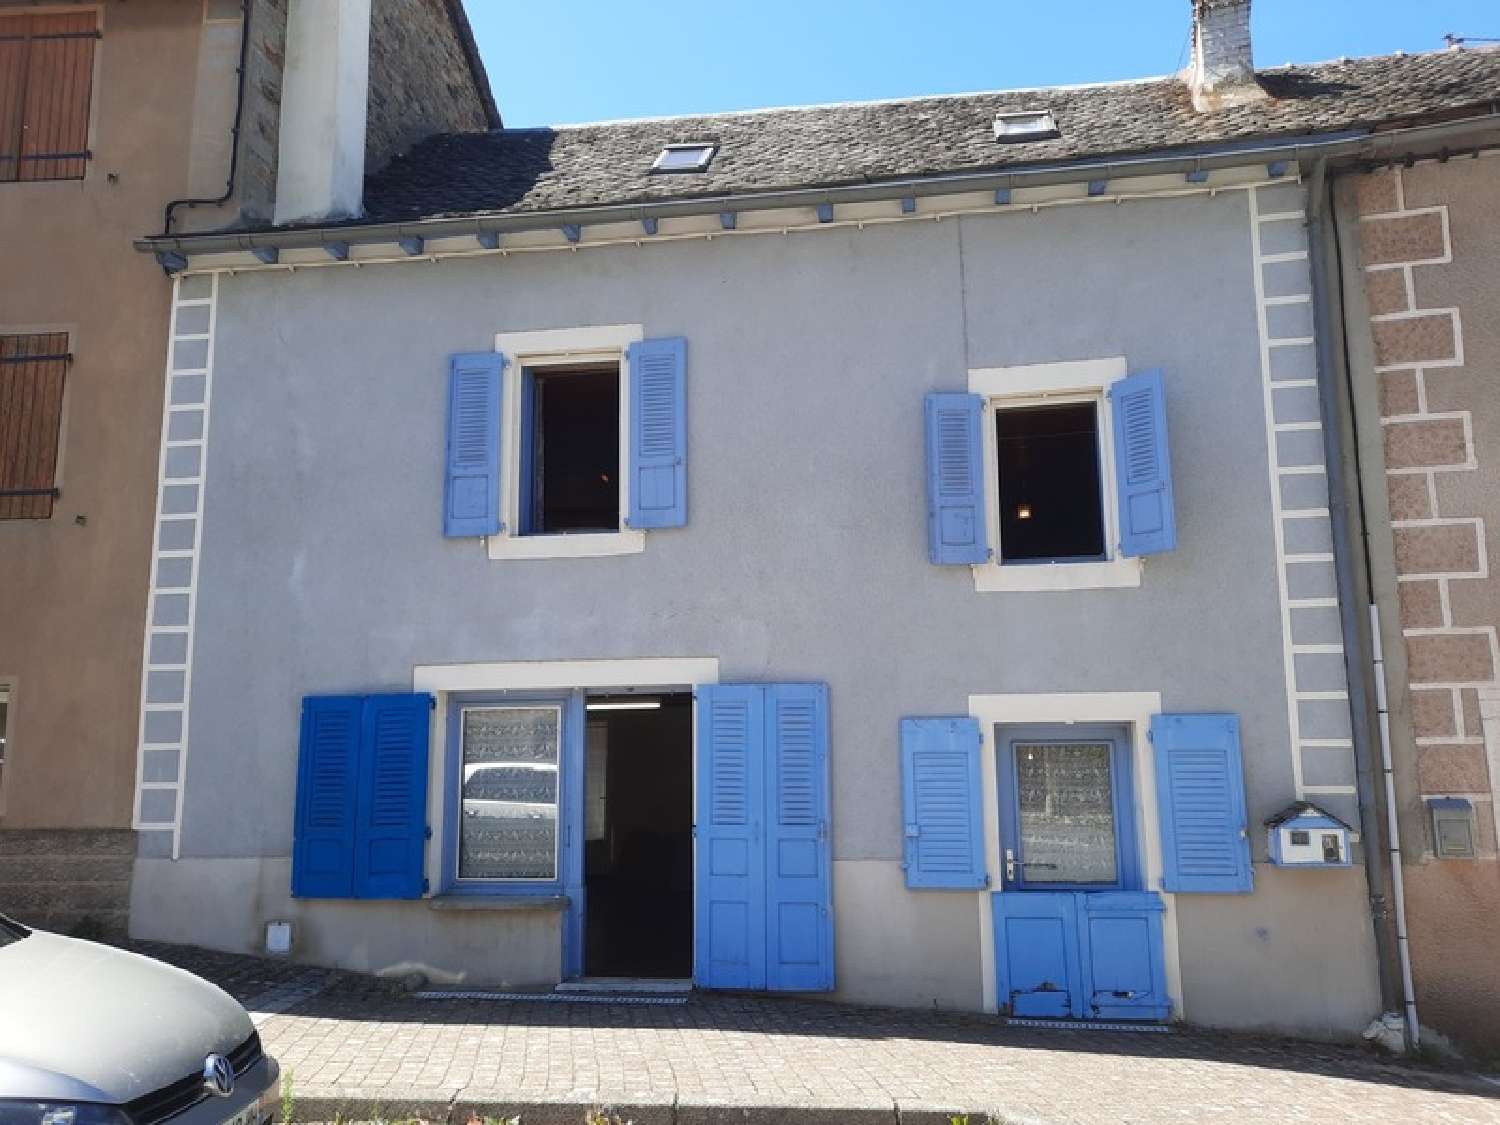  à vendre maison de village Arvieu Aveyron 1